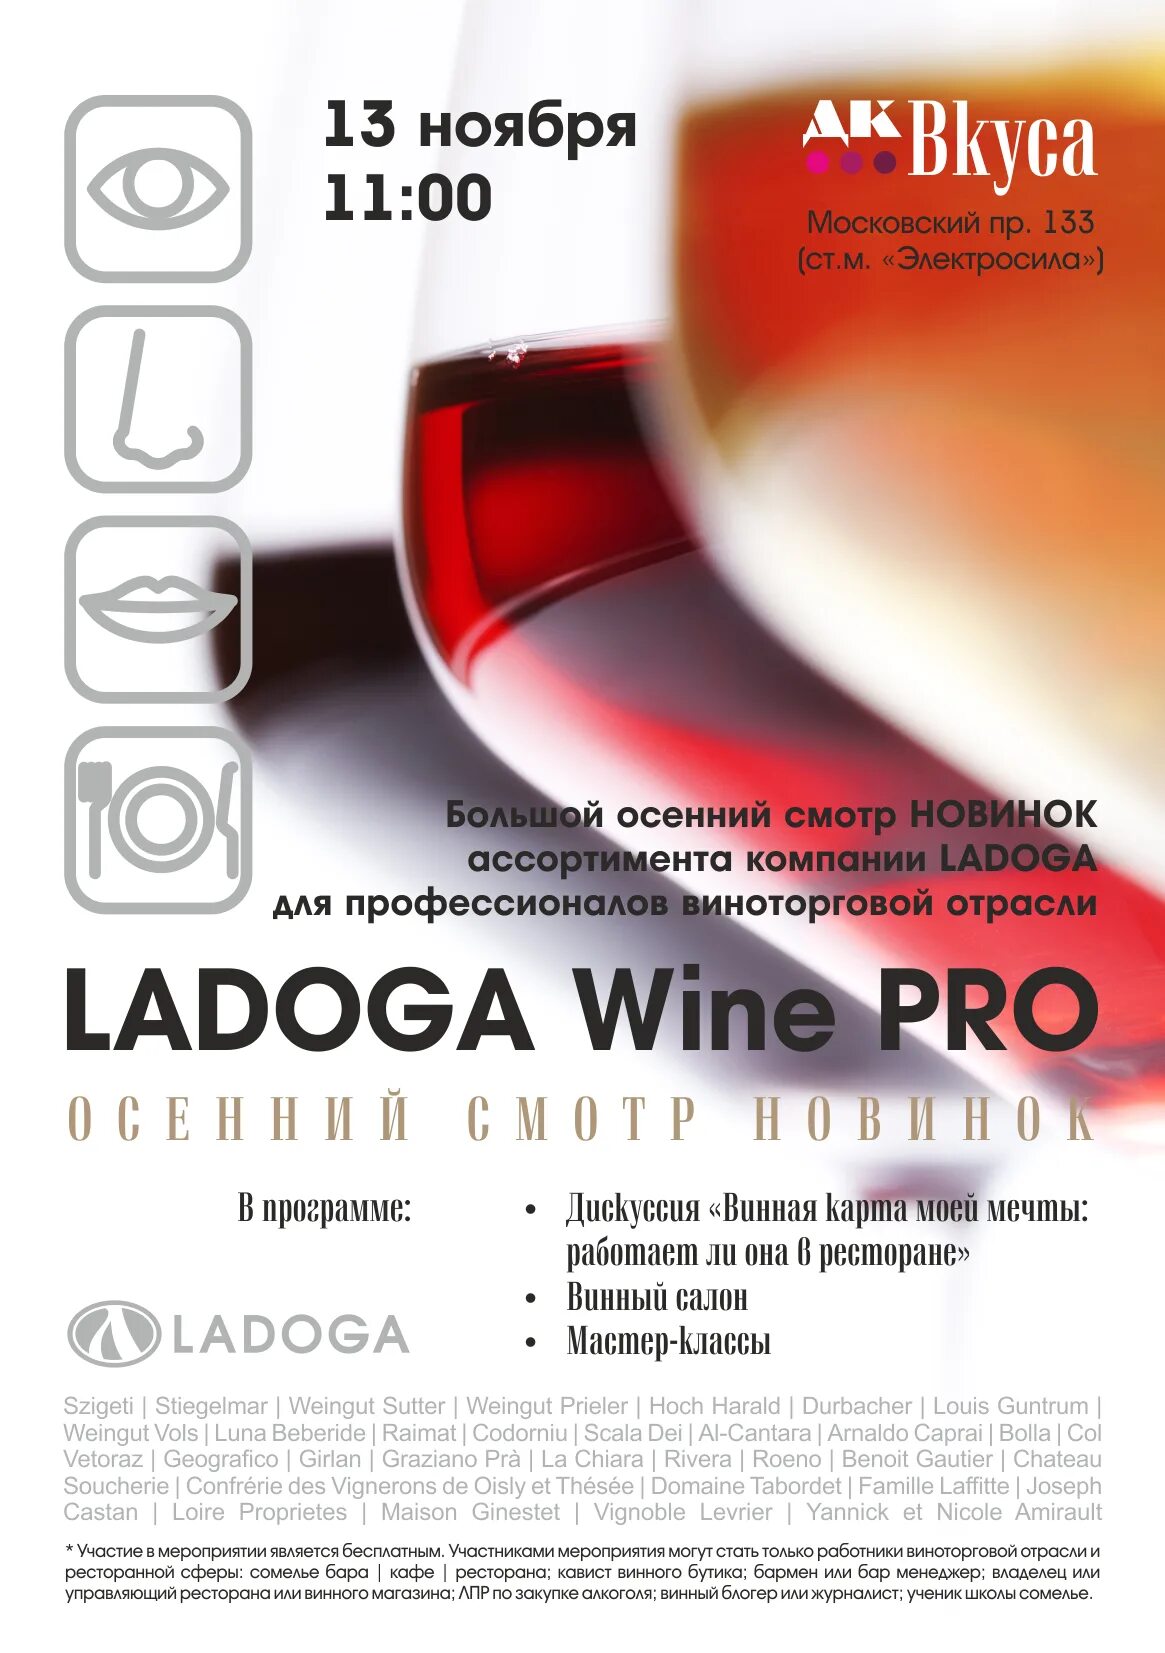 Вино брянск купить. Ладога вино. Ладога алкогольная компания ассортимент. Ladoga вино. Ресторан Pro вино.